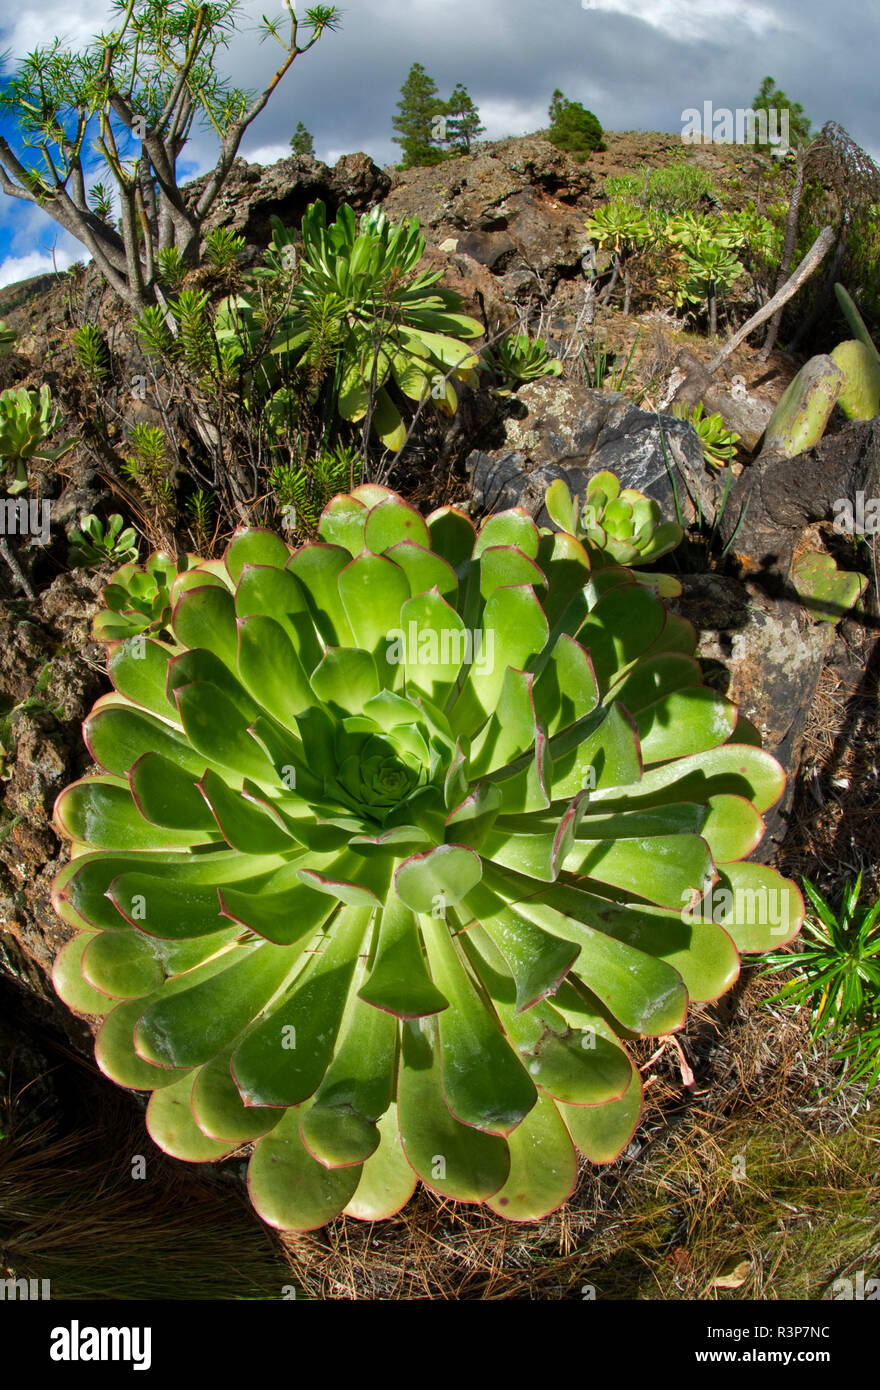 Aeonium Bejeque (sp), Es handelt sich um eine endemische Pflanze der  Kanaren Insel Teneriffa Stockfotografie - Alamy